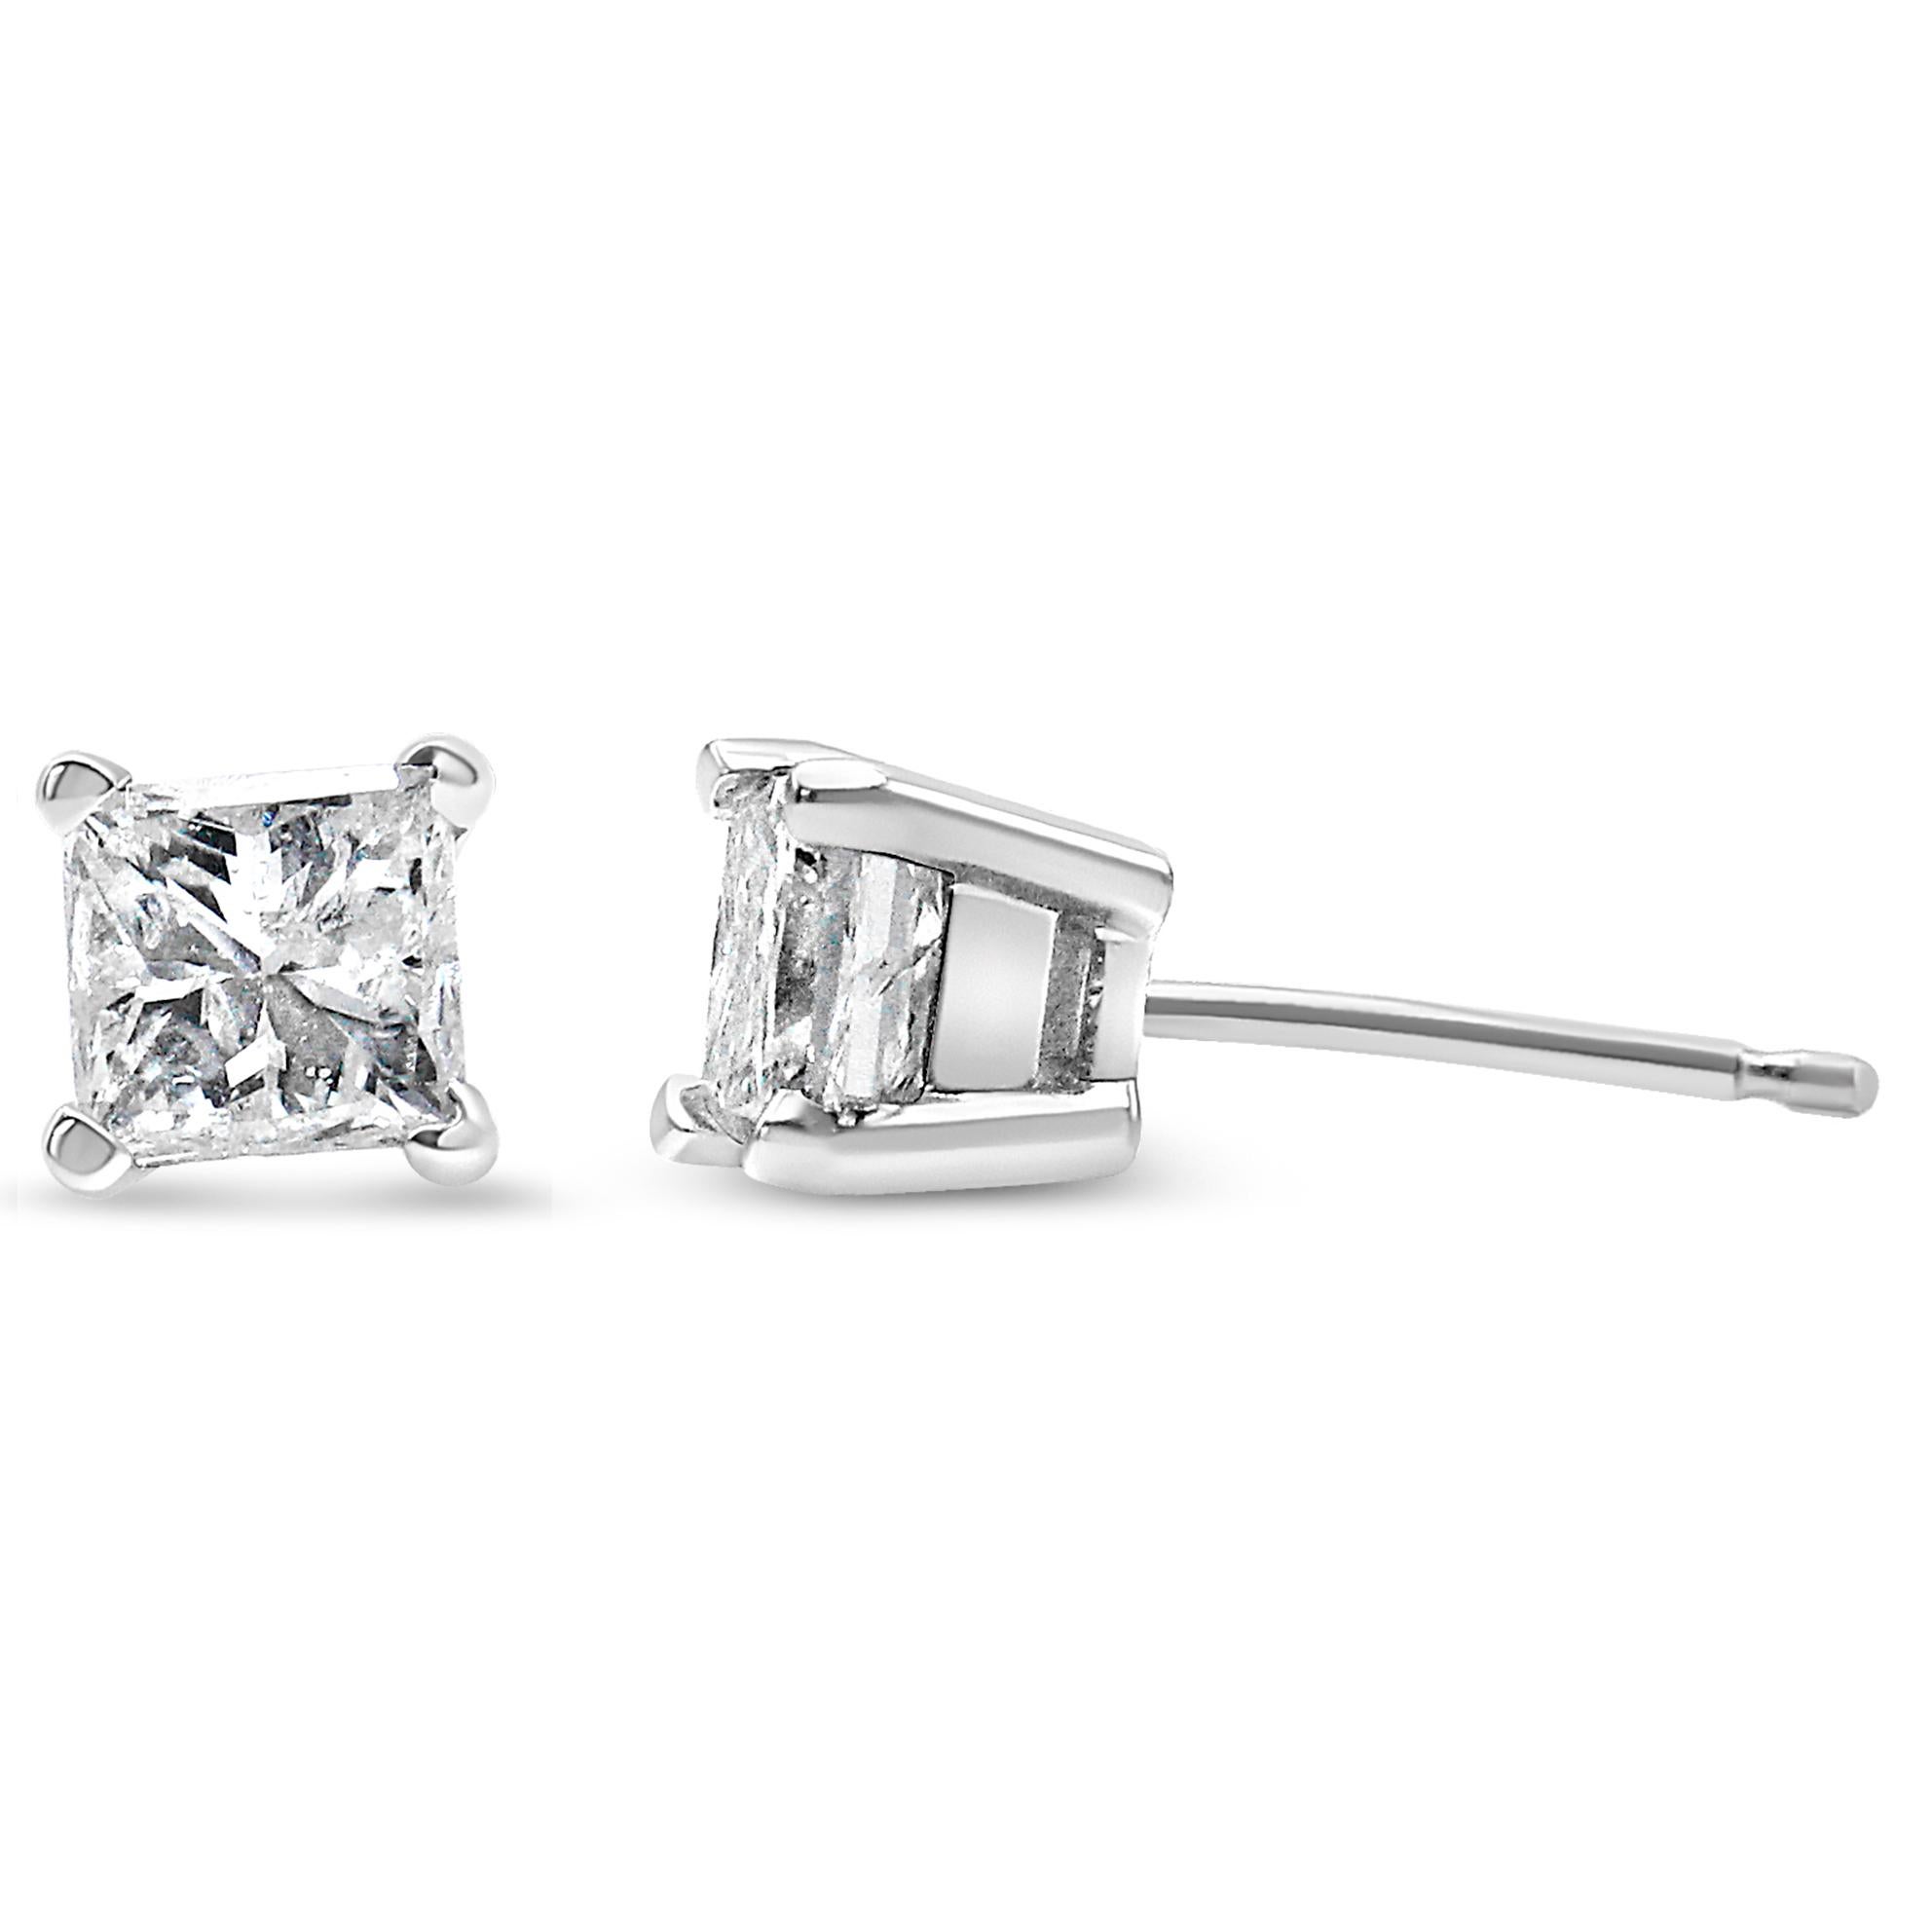 1/4 carat princess cut diamond earrings